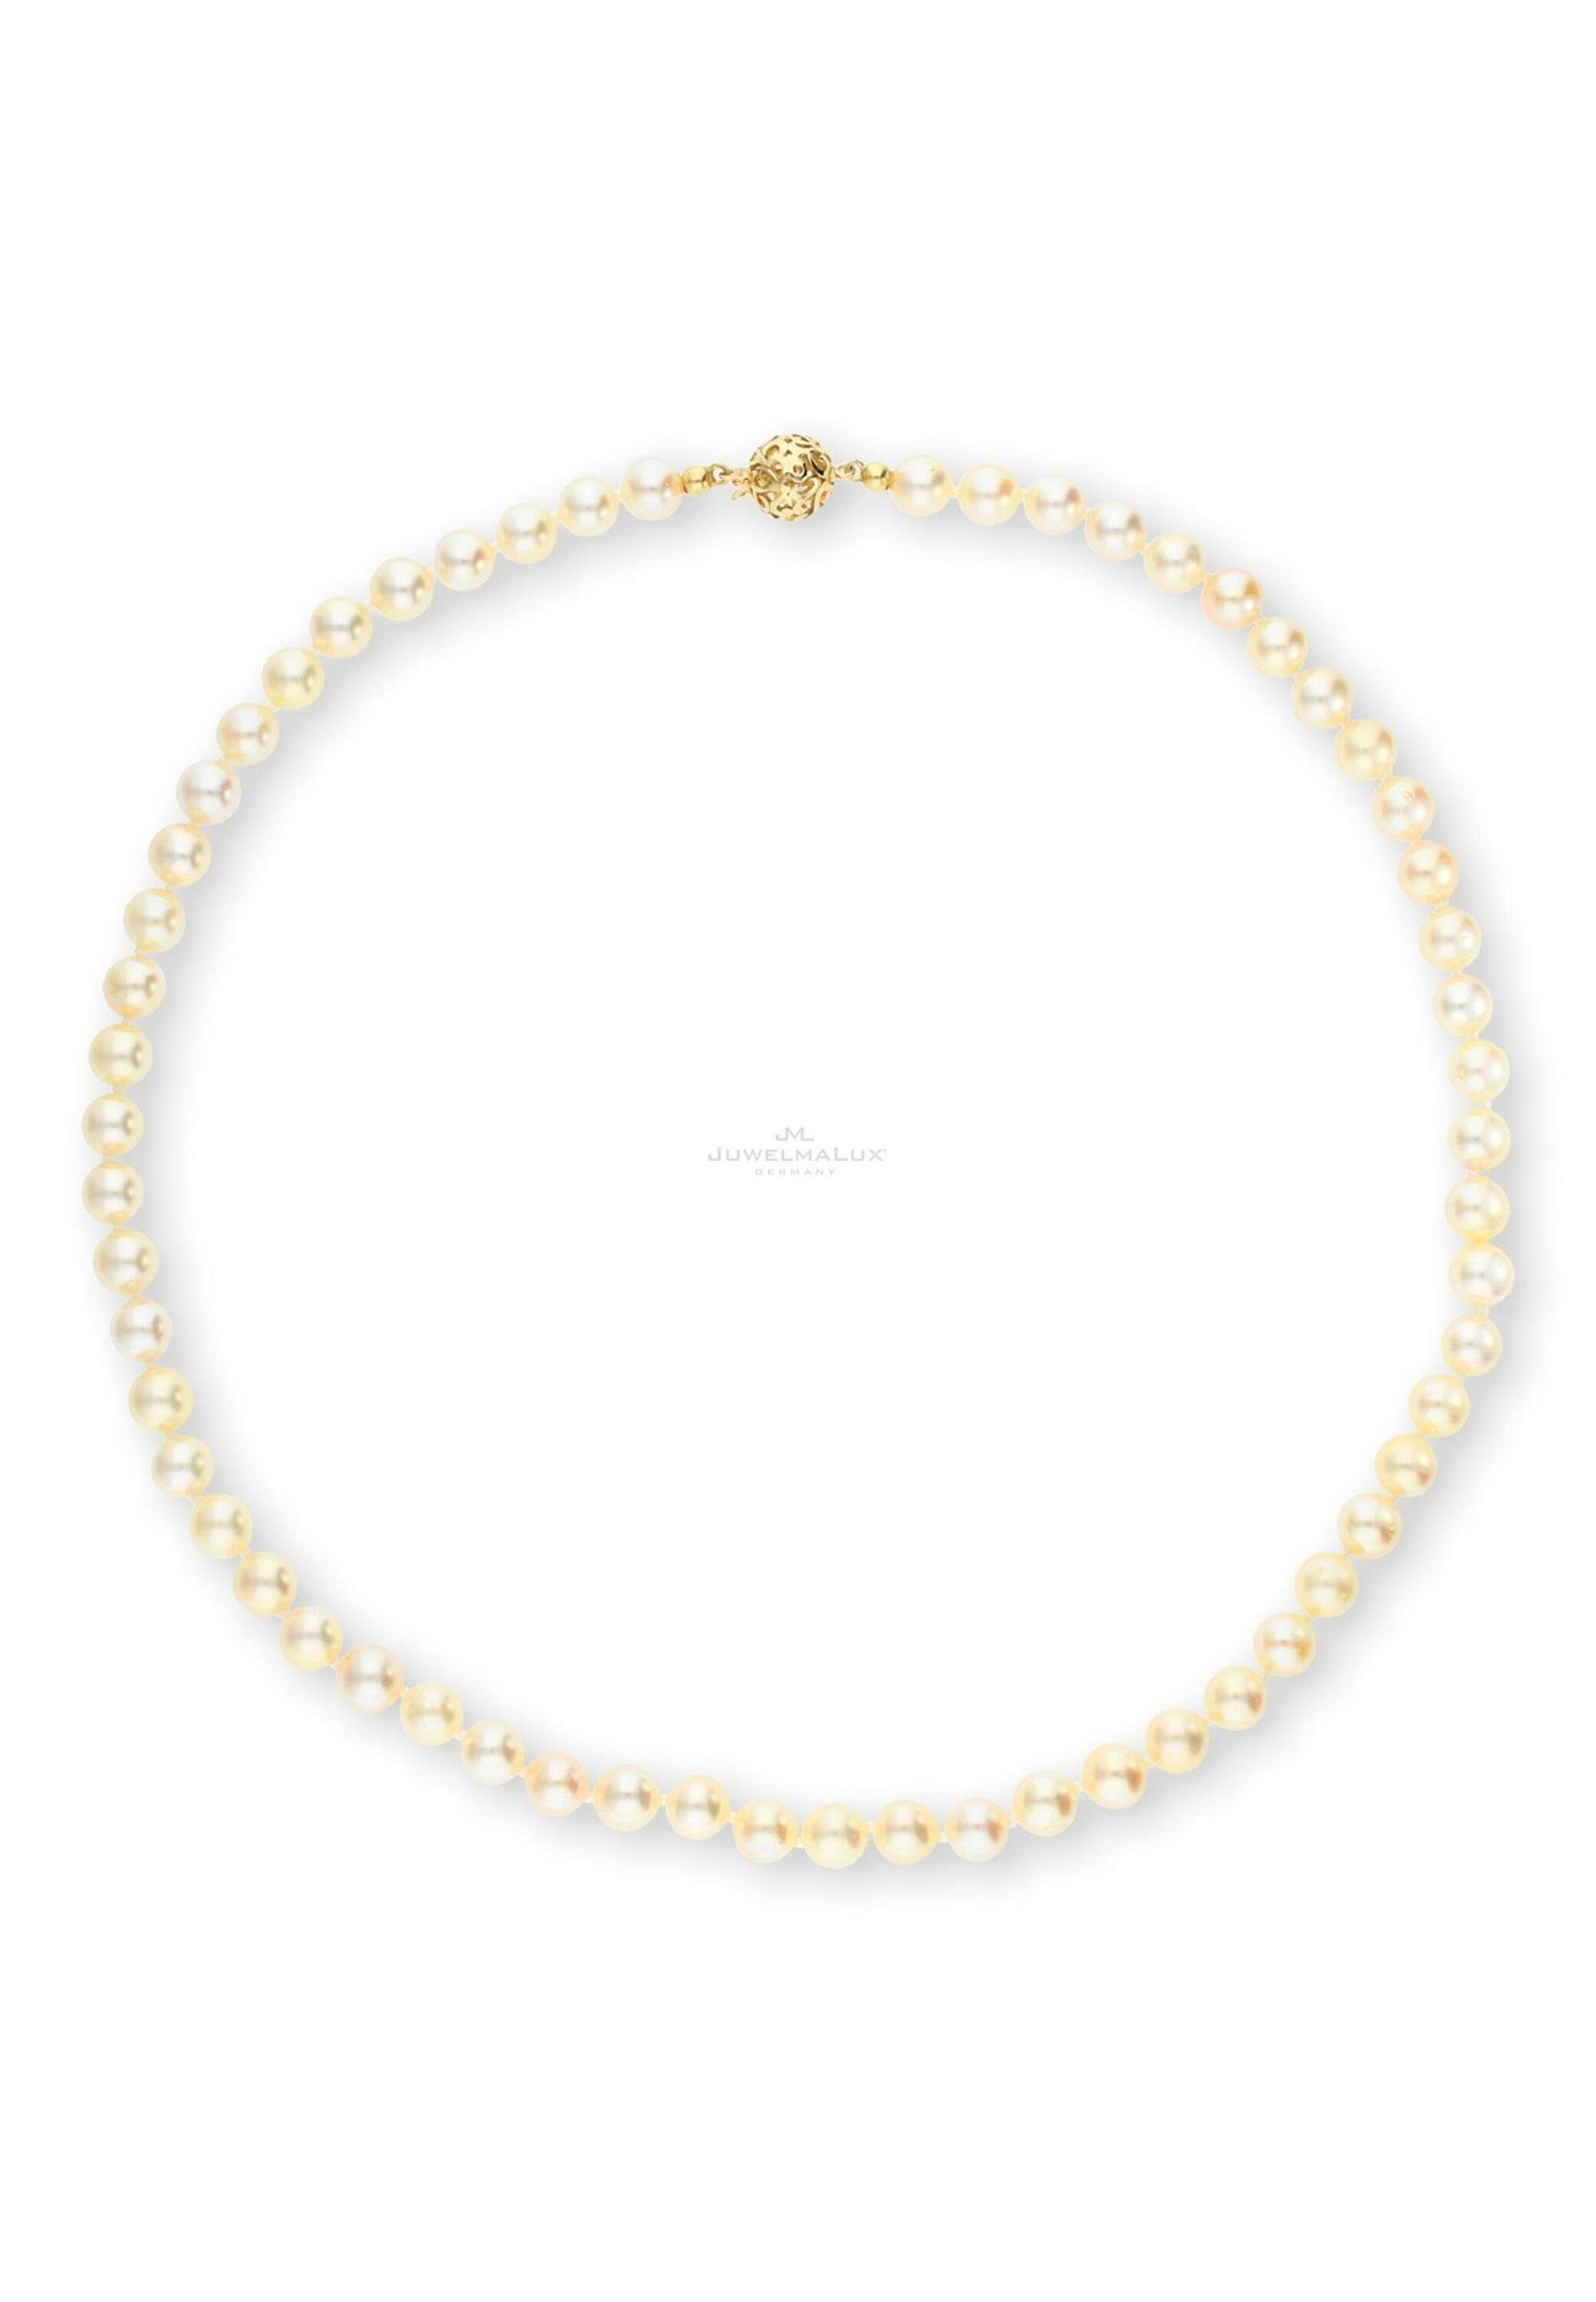 JuwelmaLux Perlenkette Perlenkette Gold